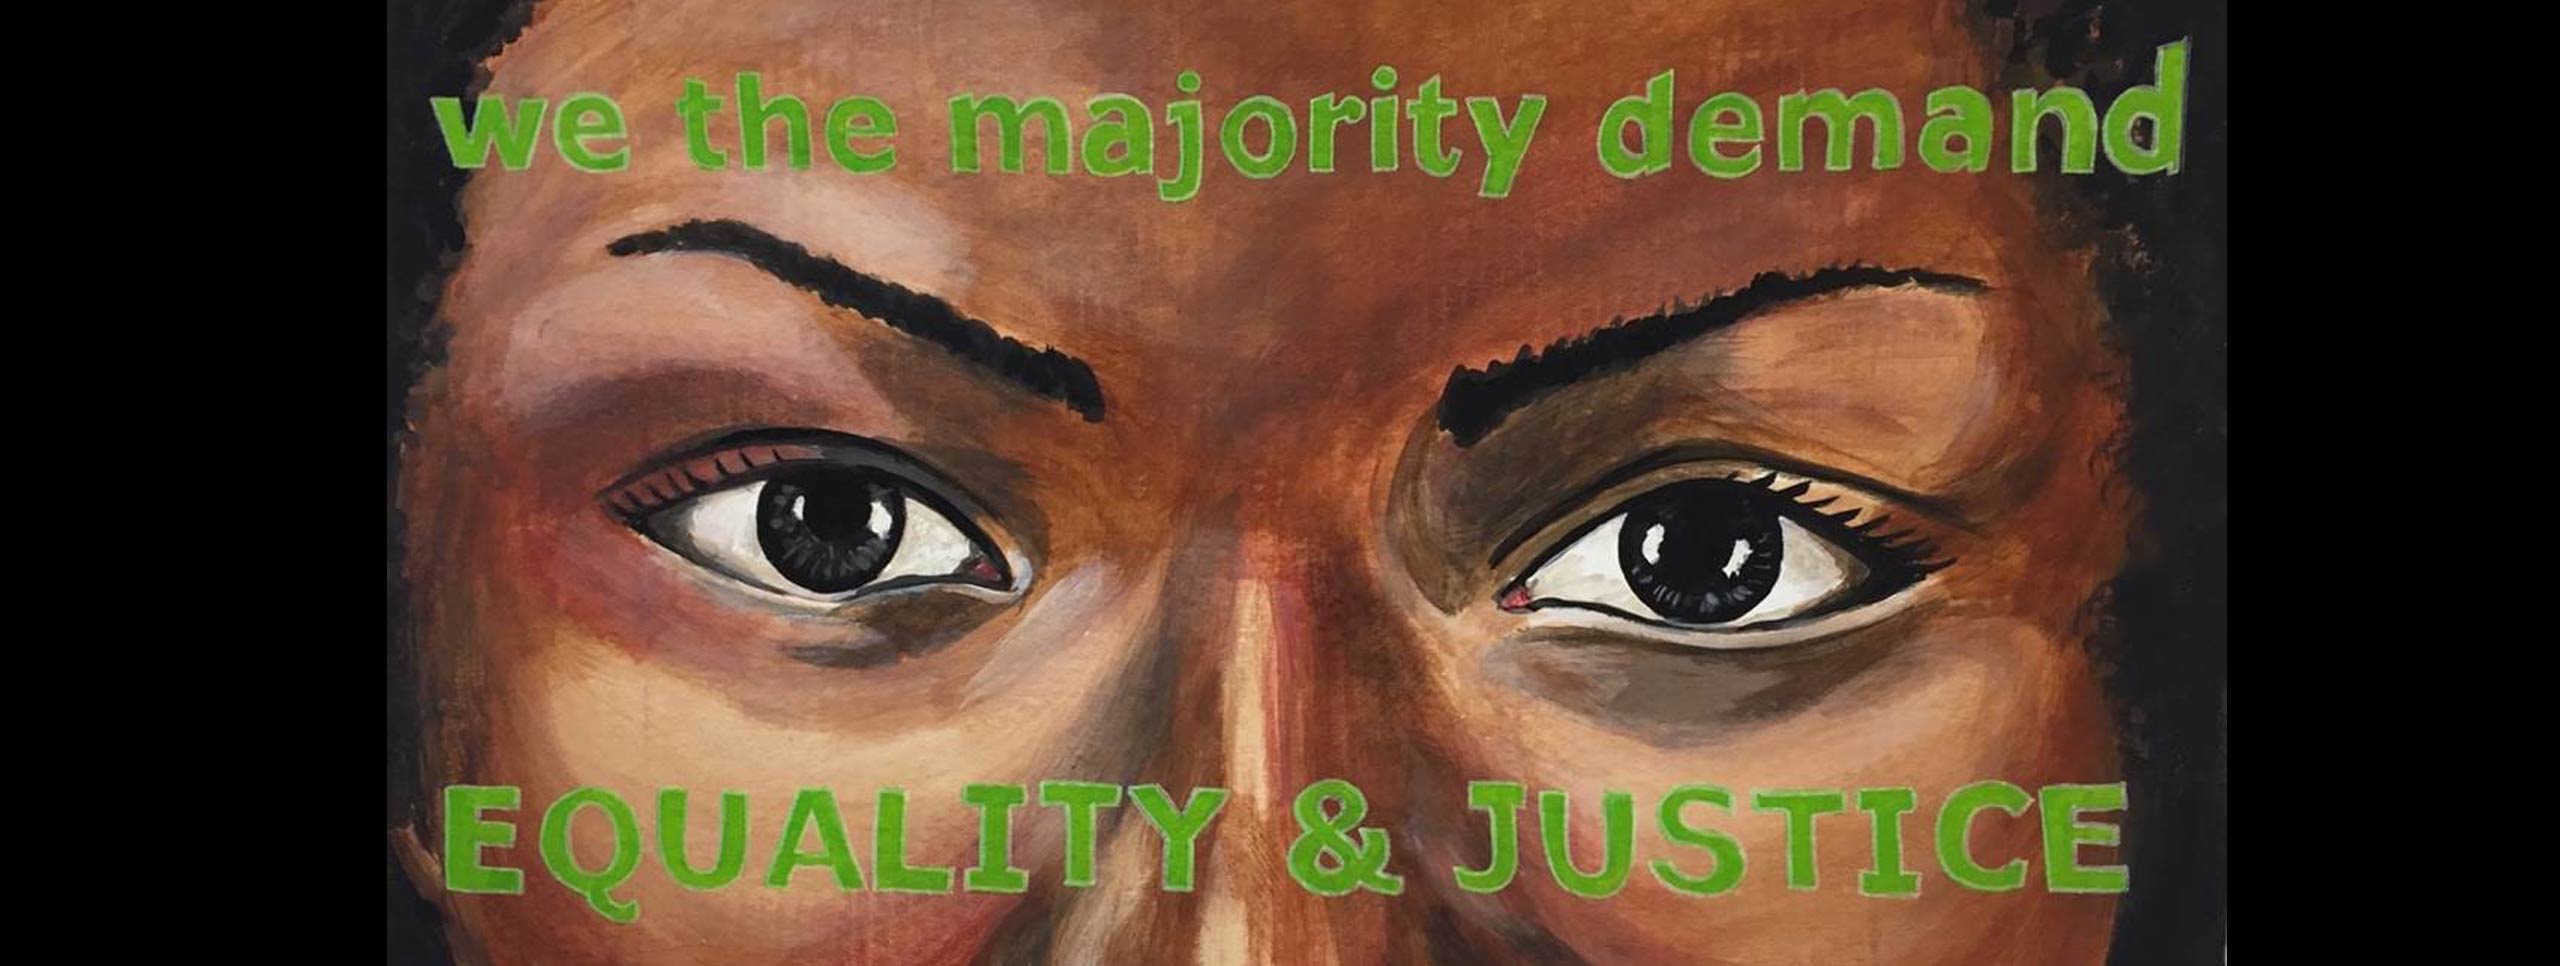 여자의 눈 그림. 그녀의 이마와 뺨에는“우리는 대다수가 요구합니다 / 평등과 정의”라는 단어가 그려져 있습니다.